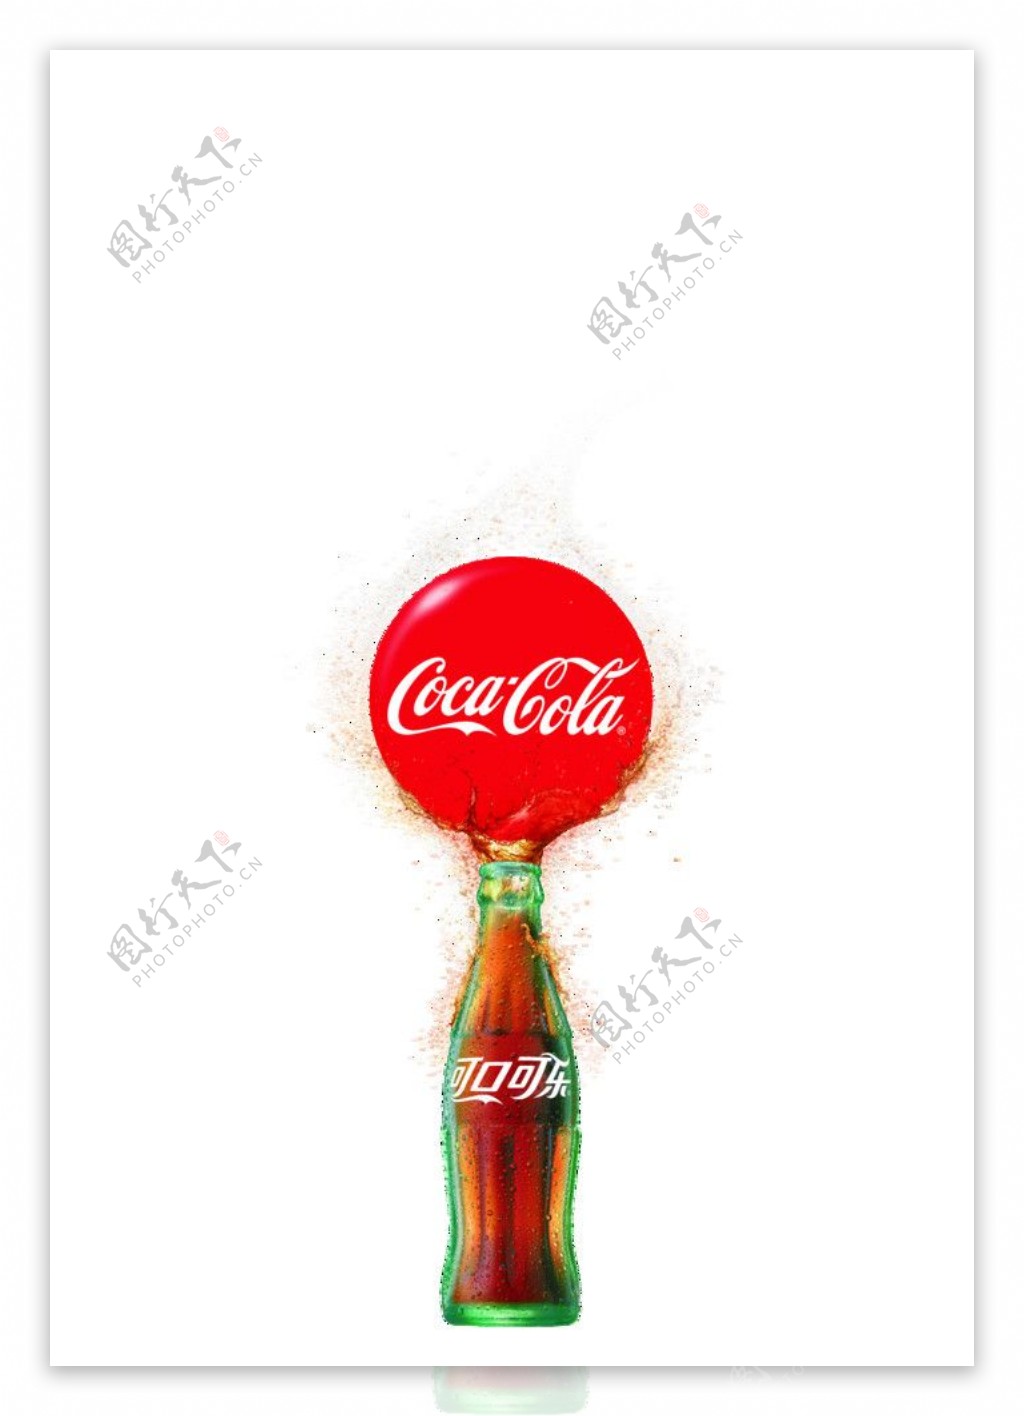 可口可乐平面创意广告玻璃瓶图片